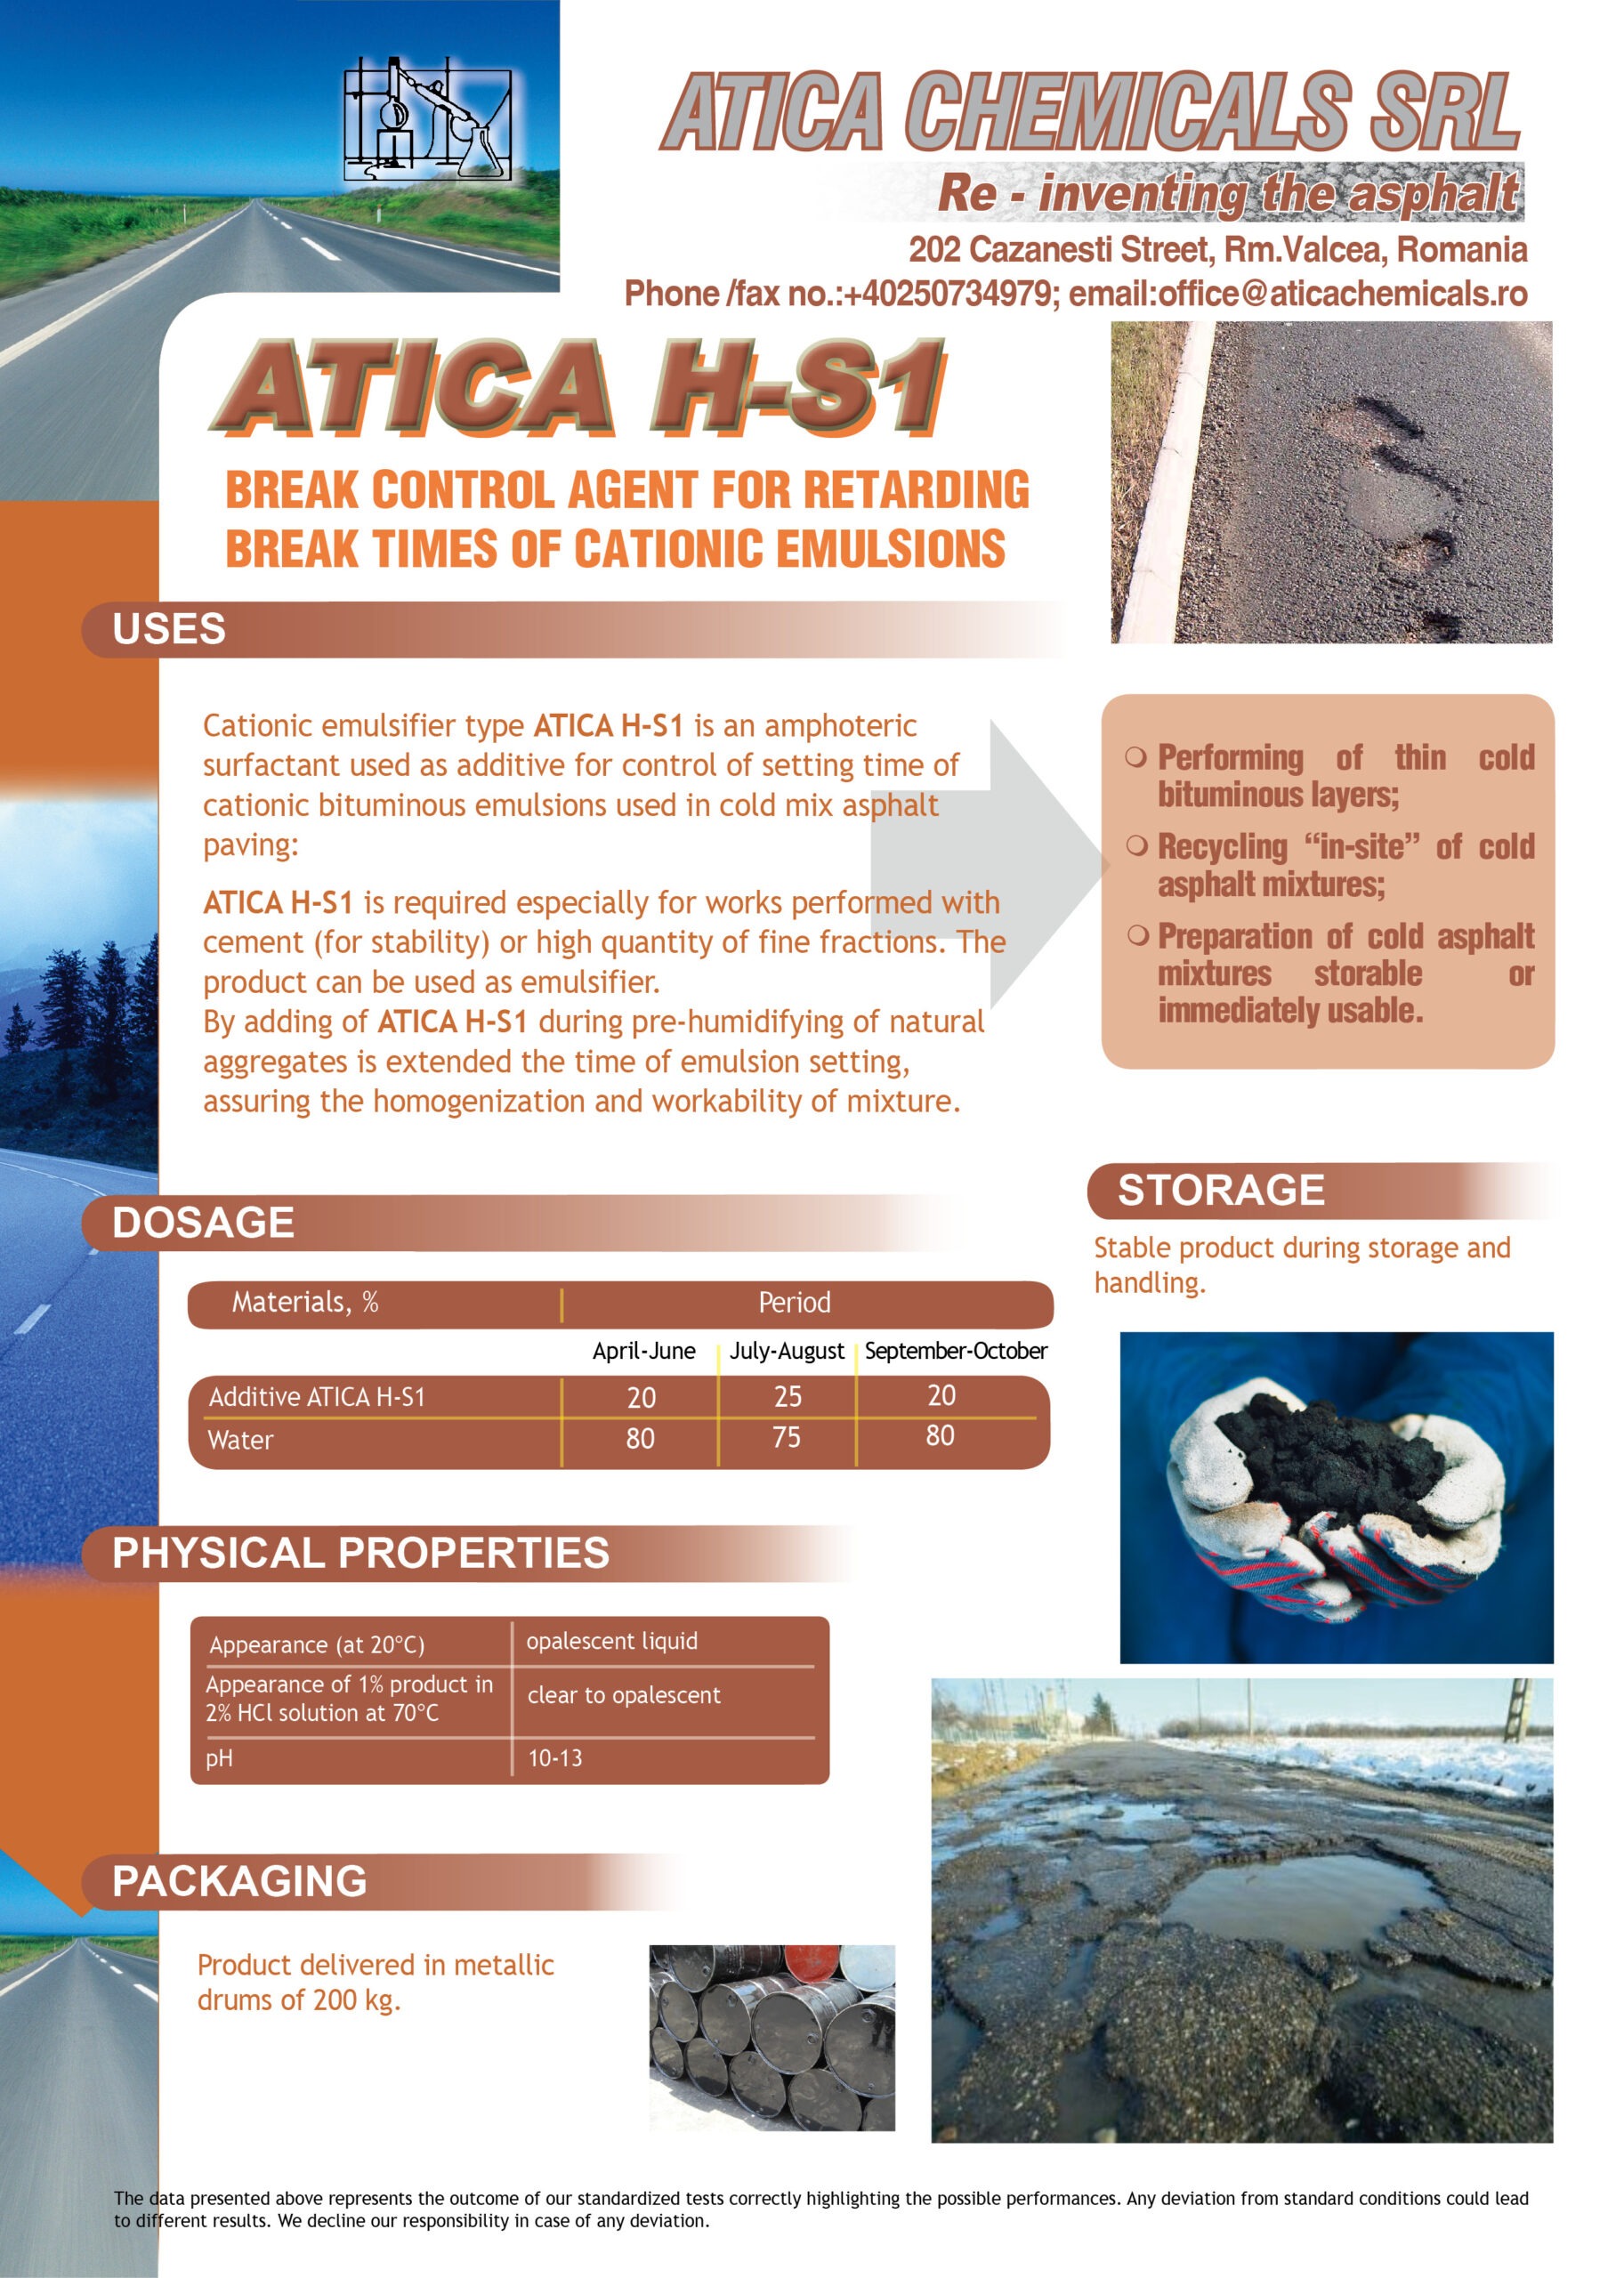 ATICA HS1 | Aditiv pentru controlul timpului de rupere a emulsiilor bituminoase